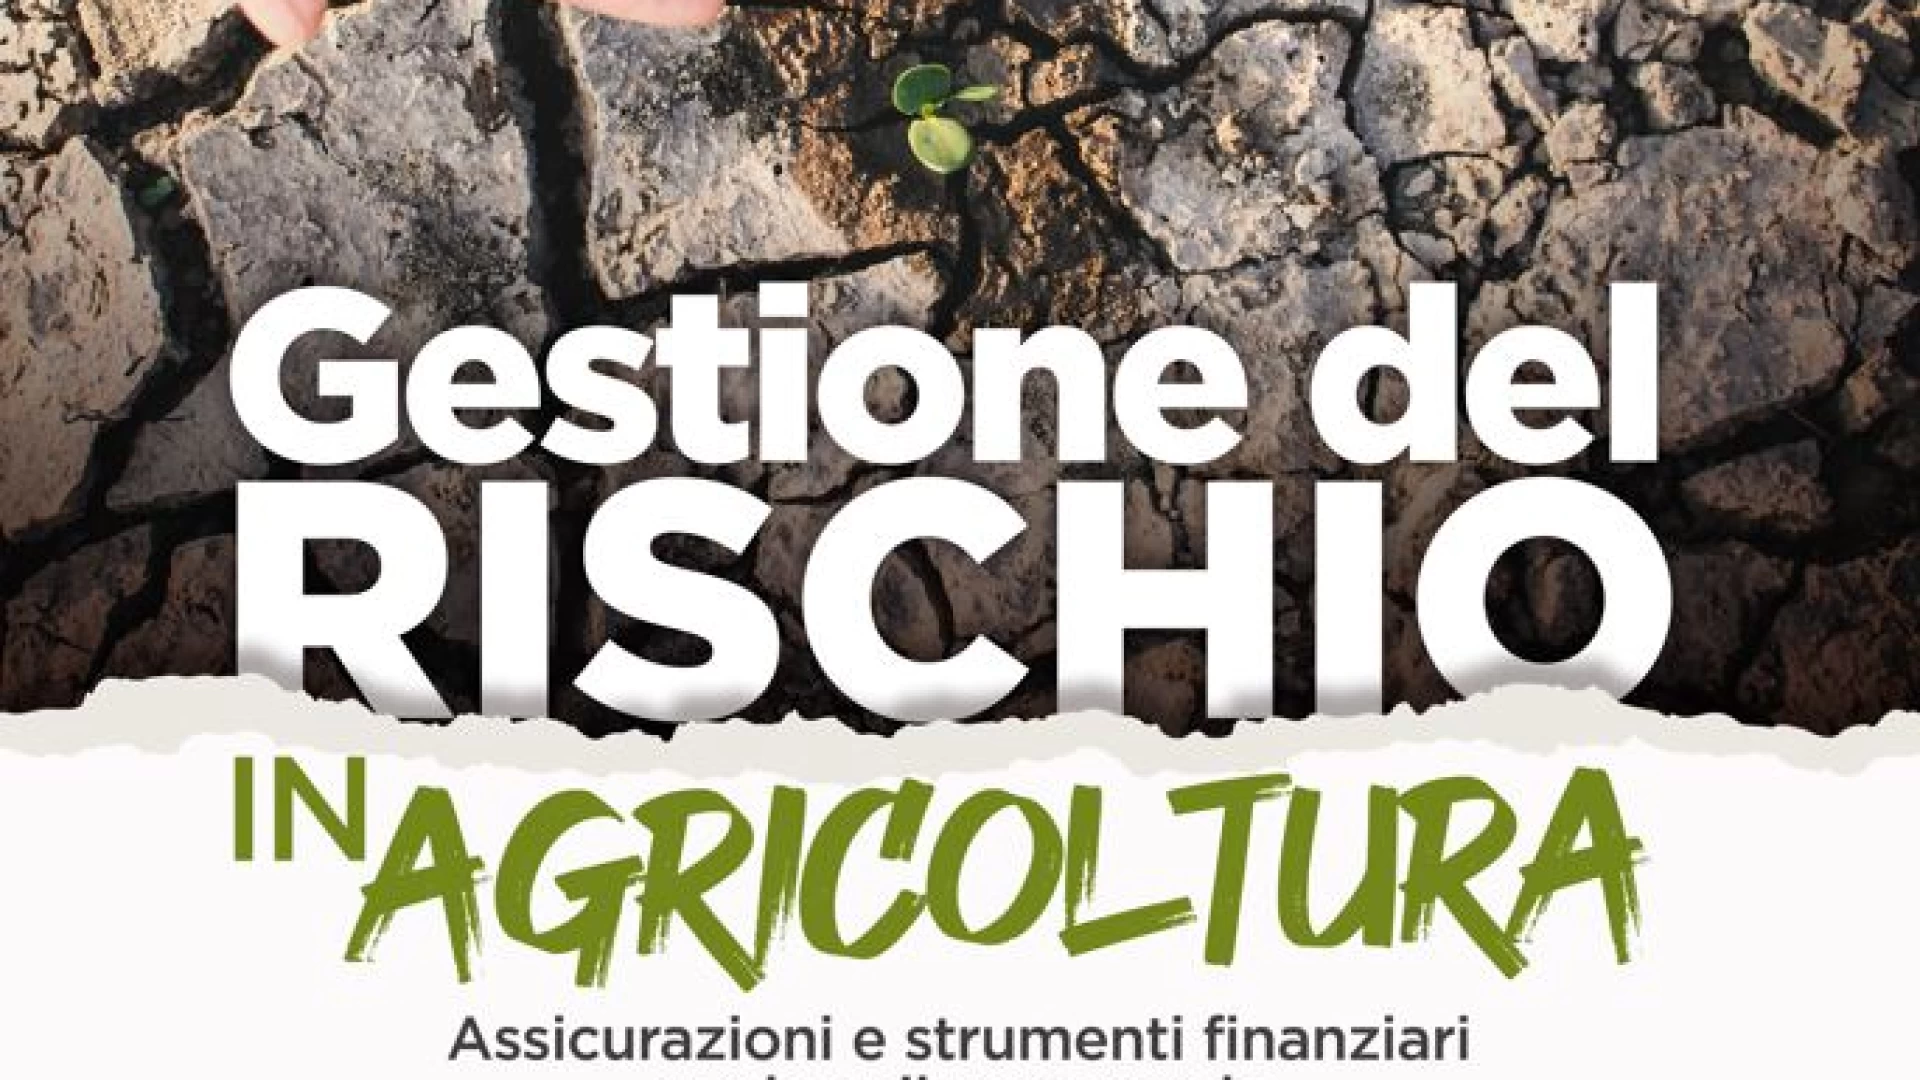 Gestione del rischio in agricoltura, il 15 marzo convegno all’Ex Gil. Cavaliere: “Necessario fronteggiare i danni economici causati da eventi climatici”.